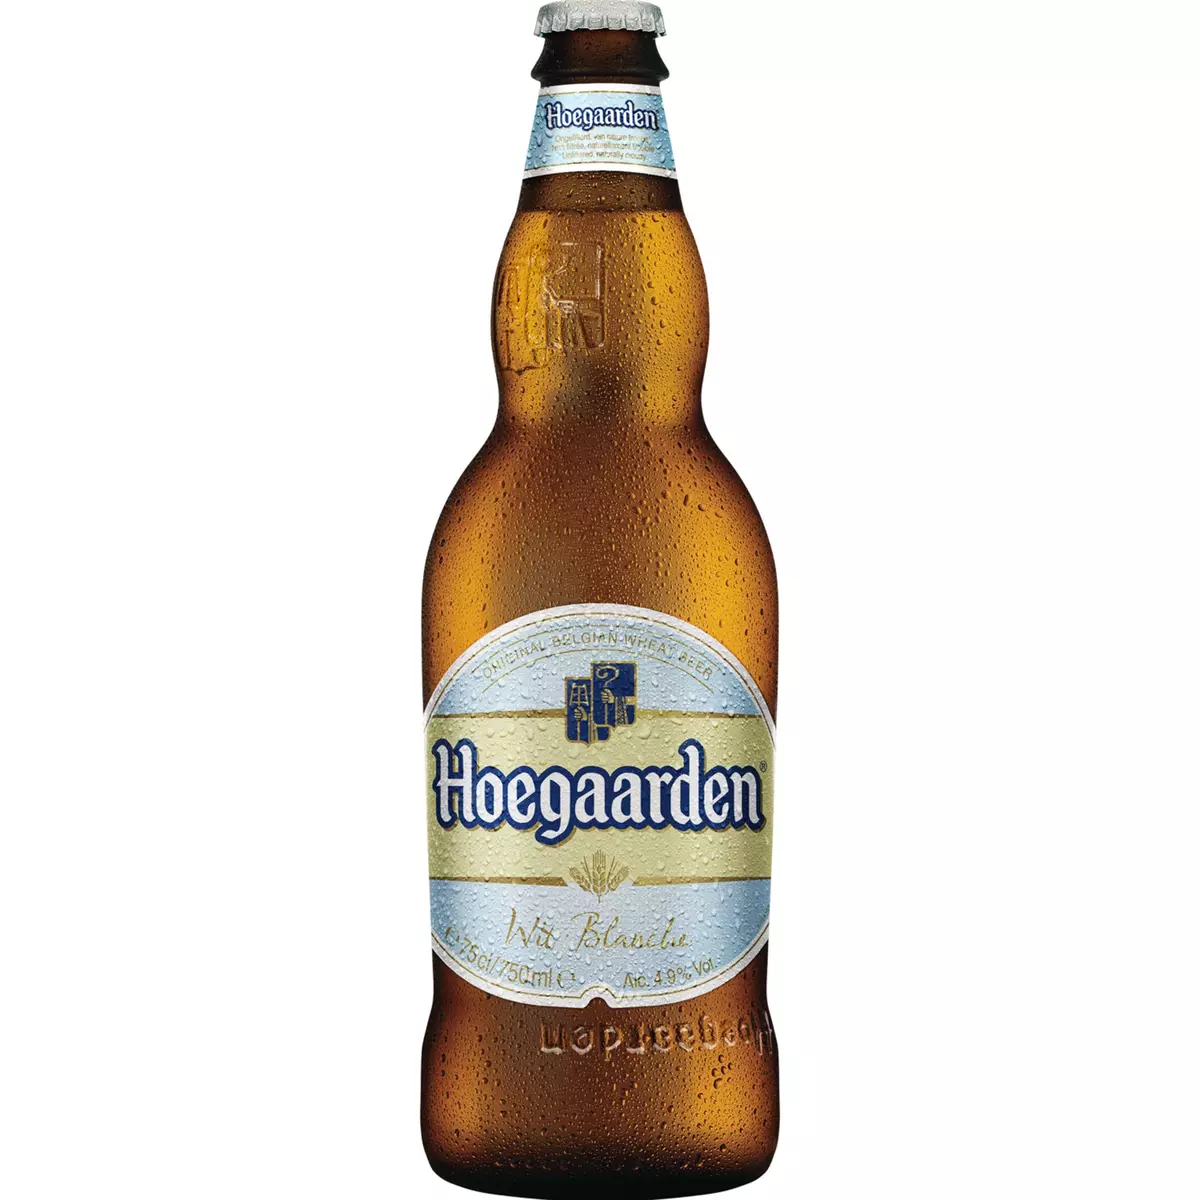 HOEGAARDEN Hoegaarden Bière blanche 5% 75cl 75cl